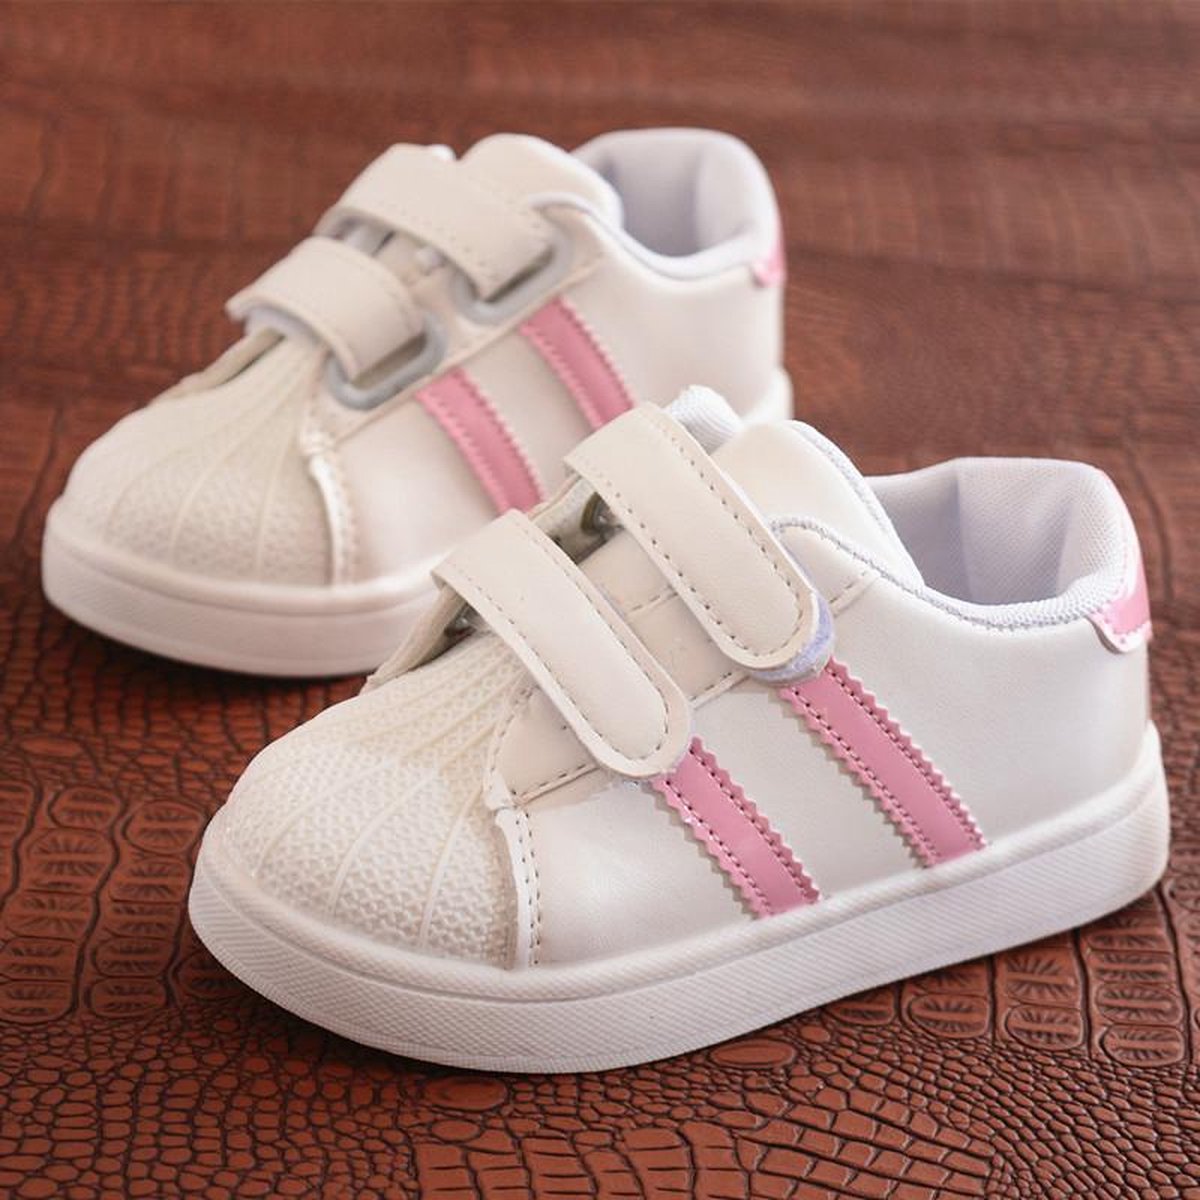 Sneakers-Wit-Roze-Strepen-Kinderschoenen-Schoenen-Maat-26-Fresh-Kids